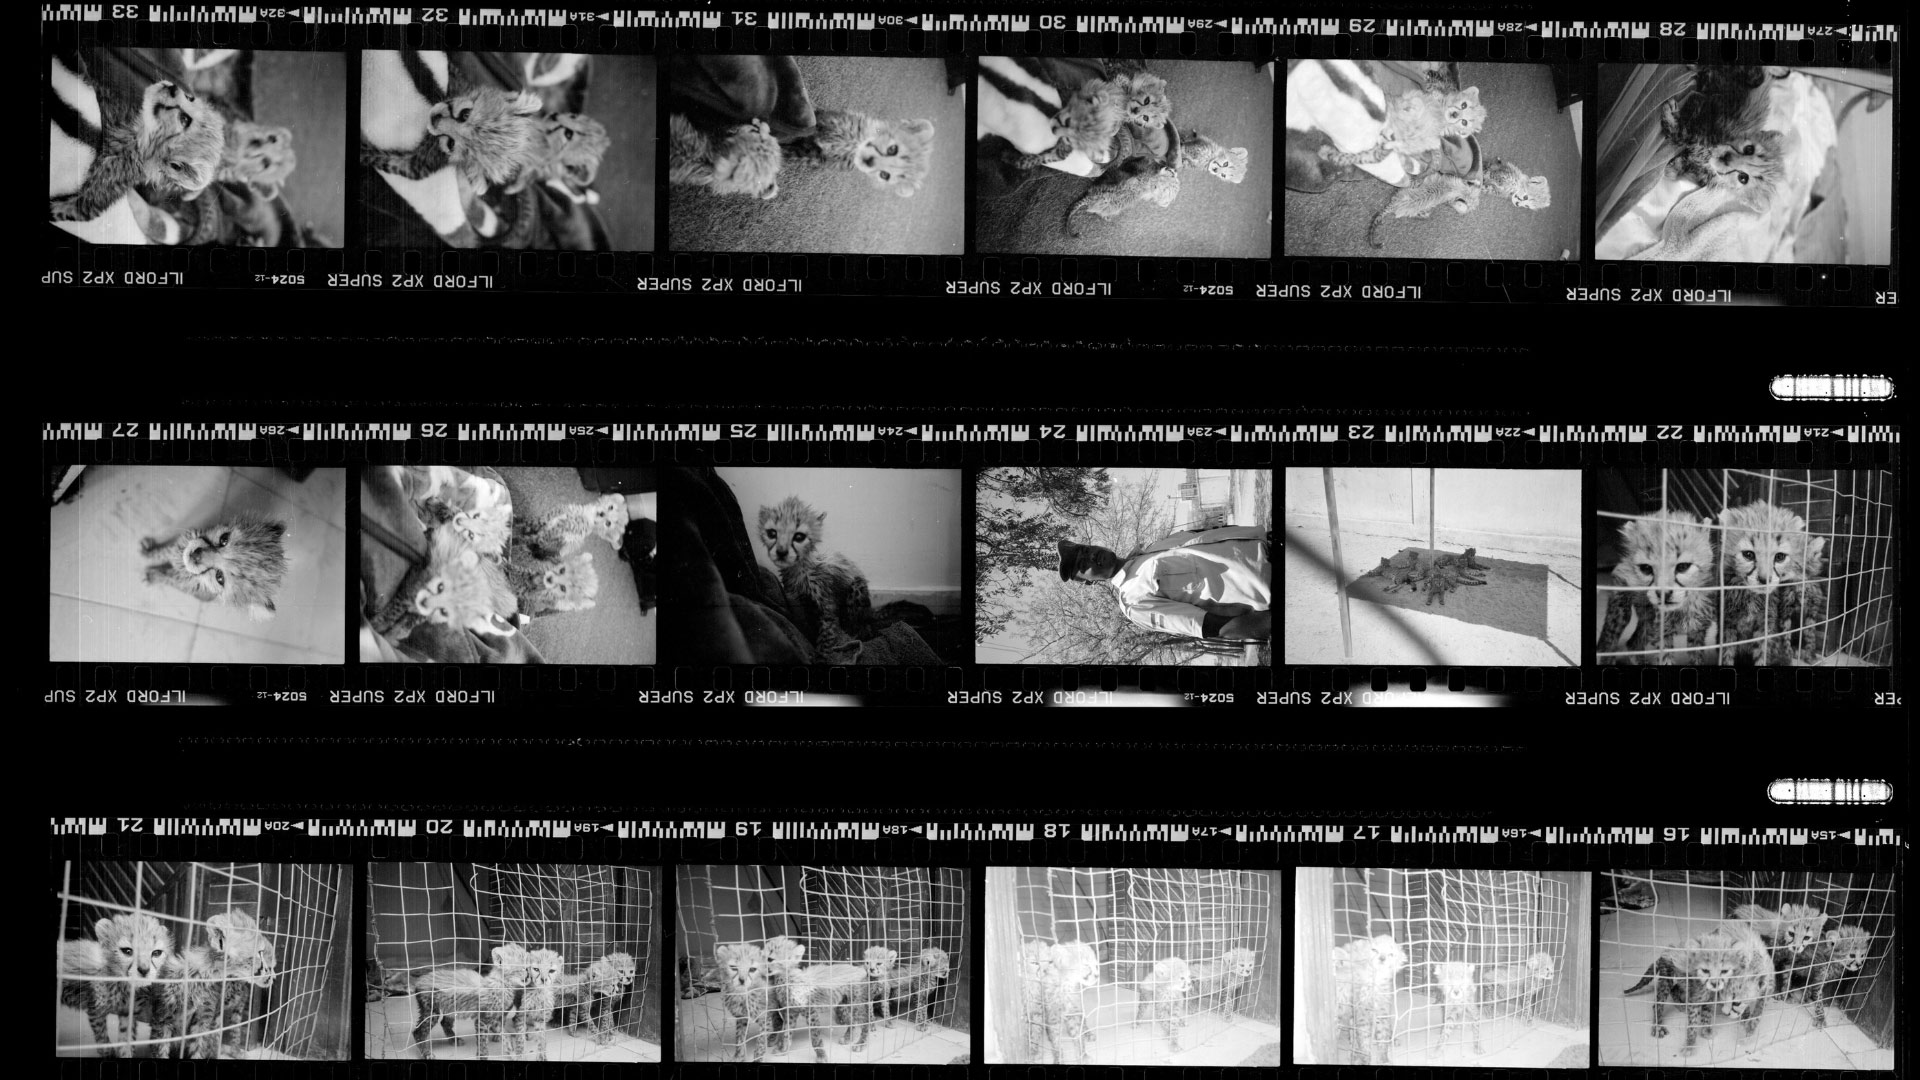 Negativo de película fotográfica blanco y negro con fotografías de guepardos cachorro.